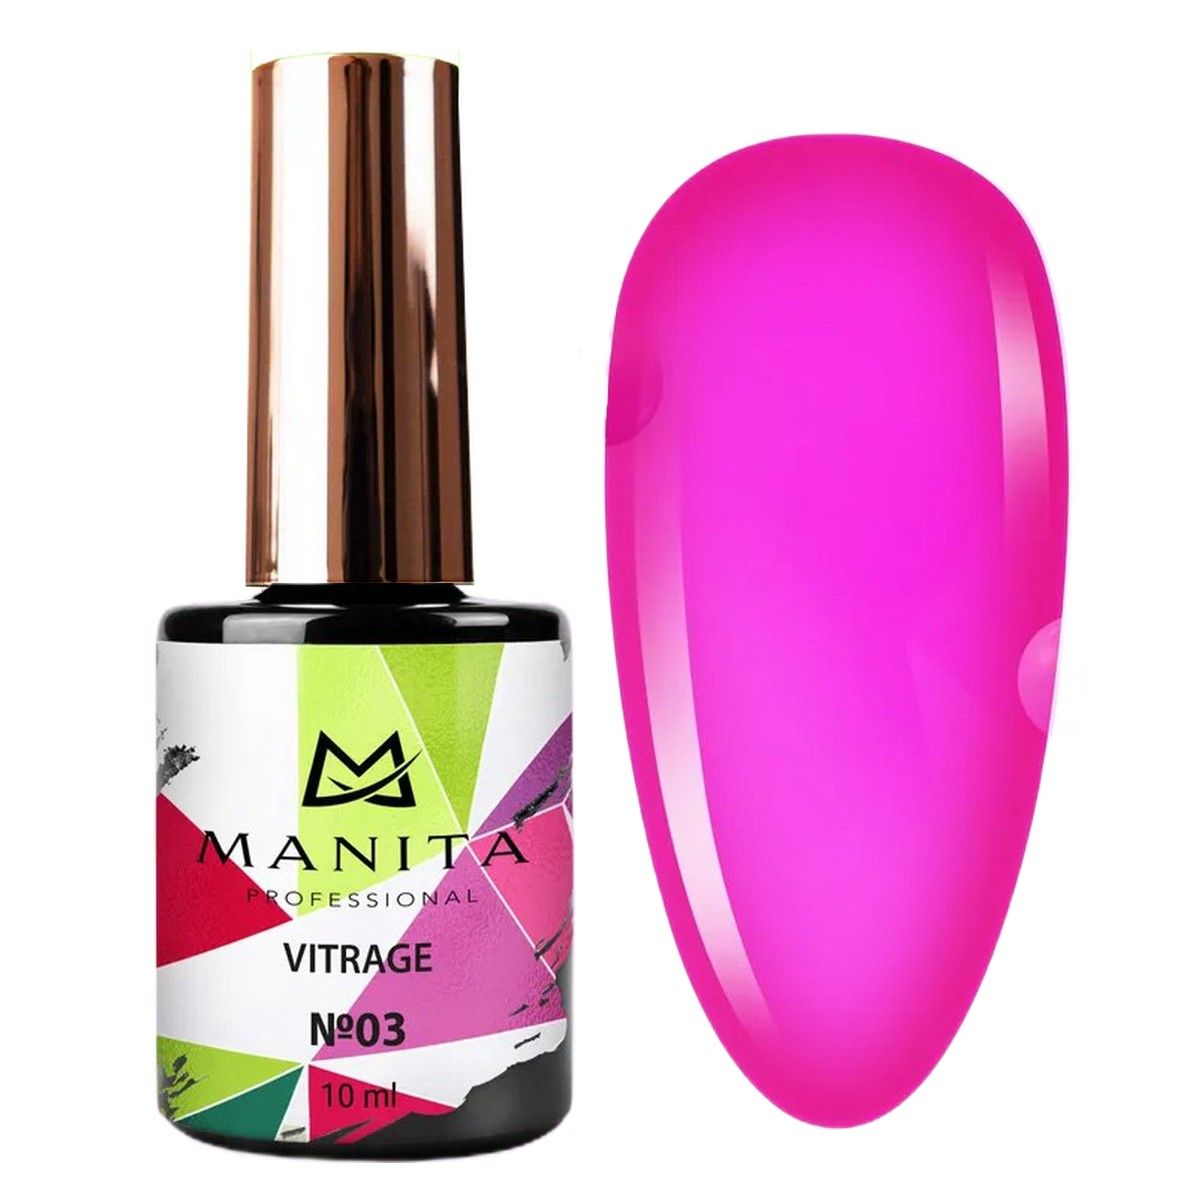 Гель-лак для ногтей Manita Professional c эффектом витража Vitrage №03 ярко-розовый 10 мл